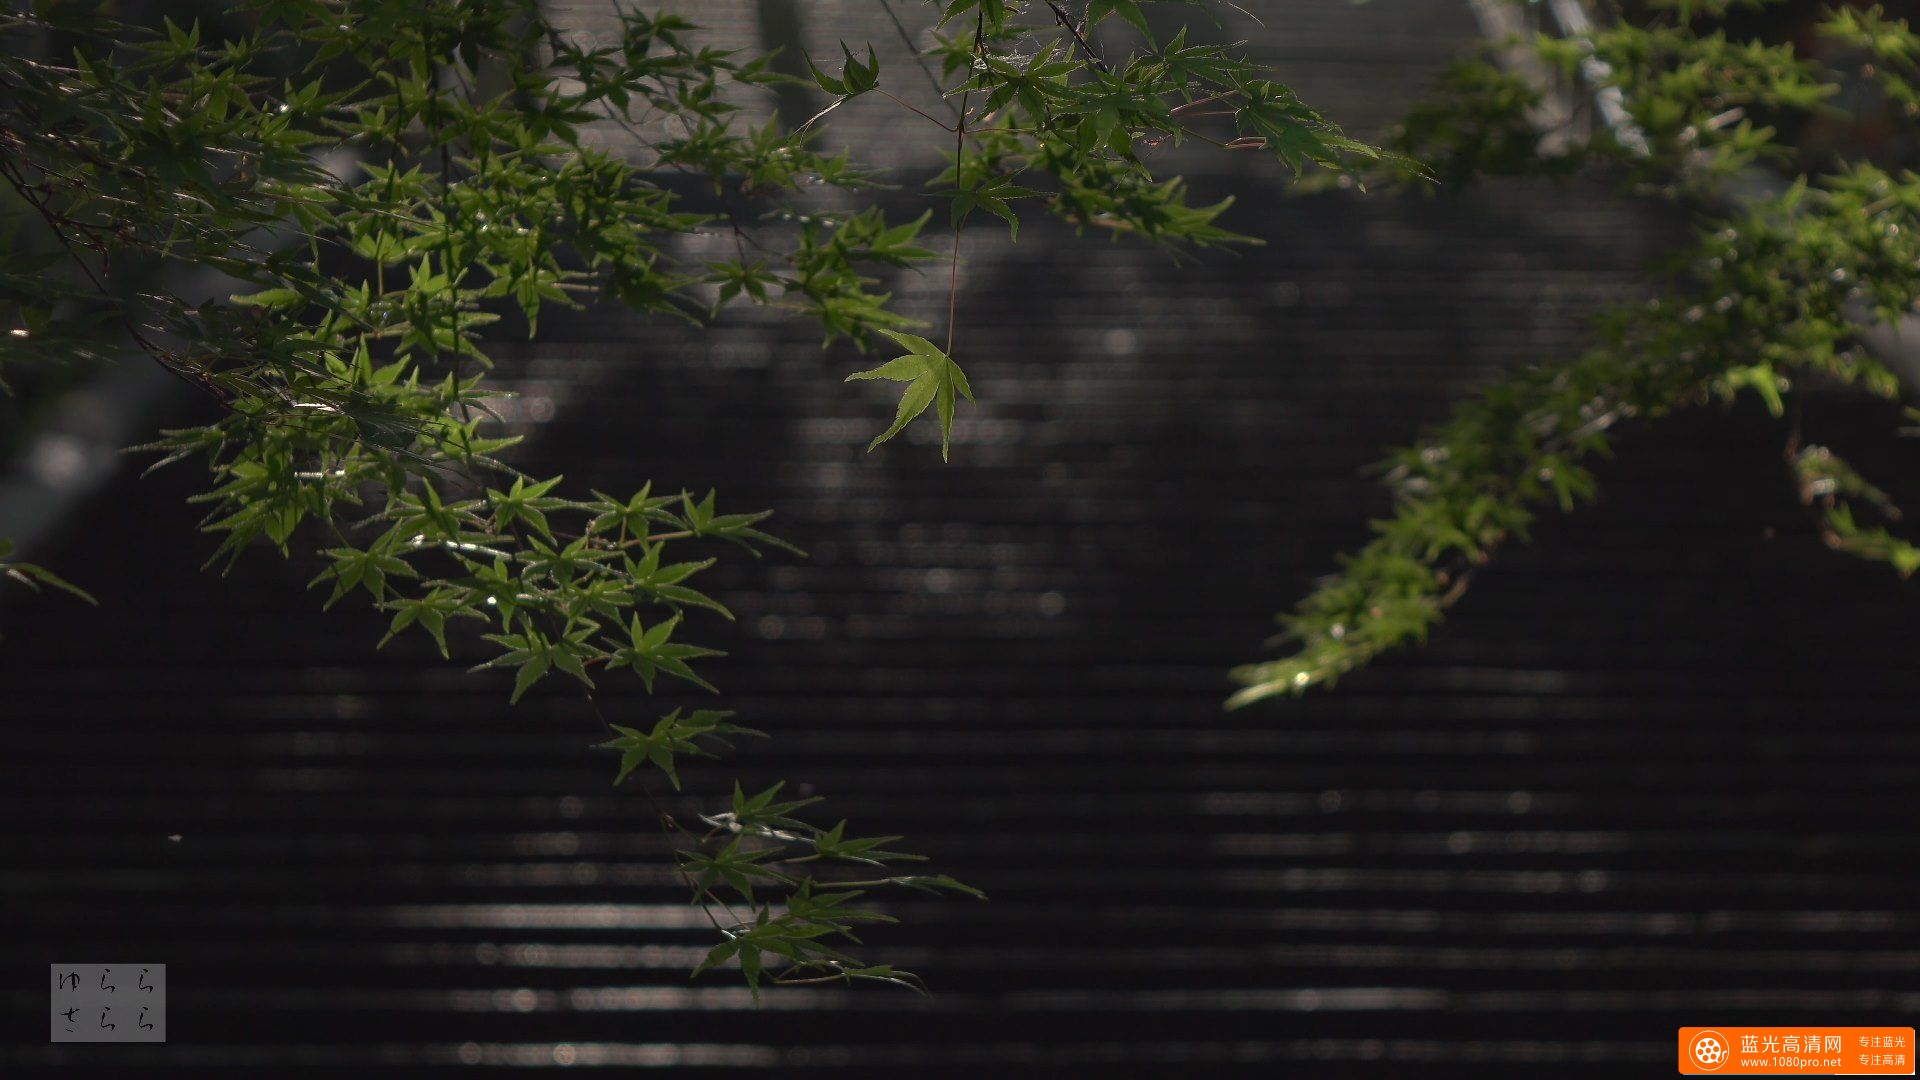 陰翳礼讃 京都の庭園